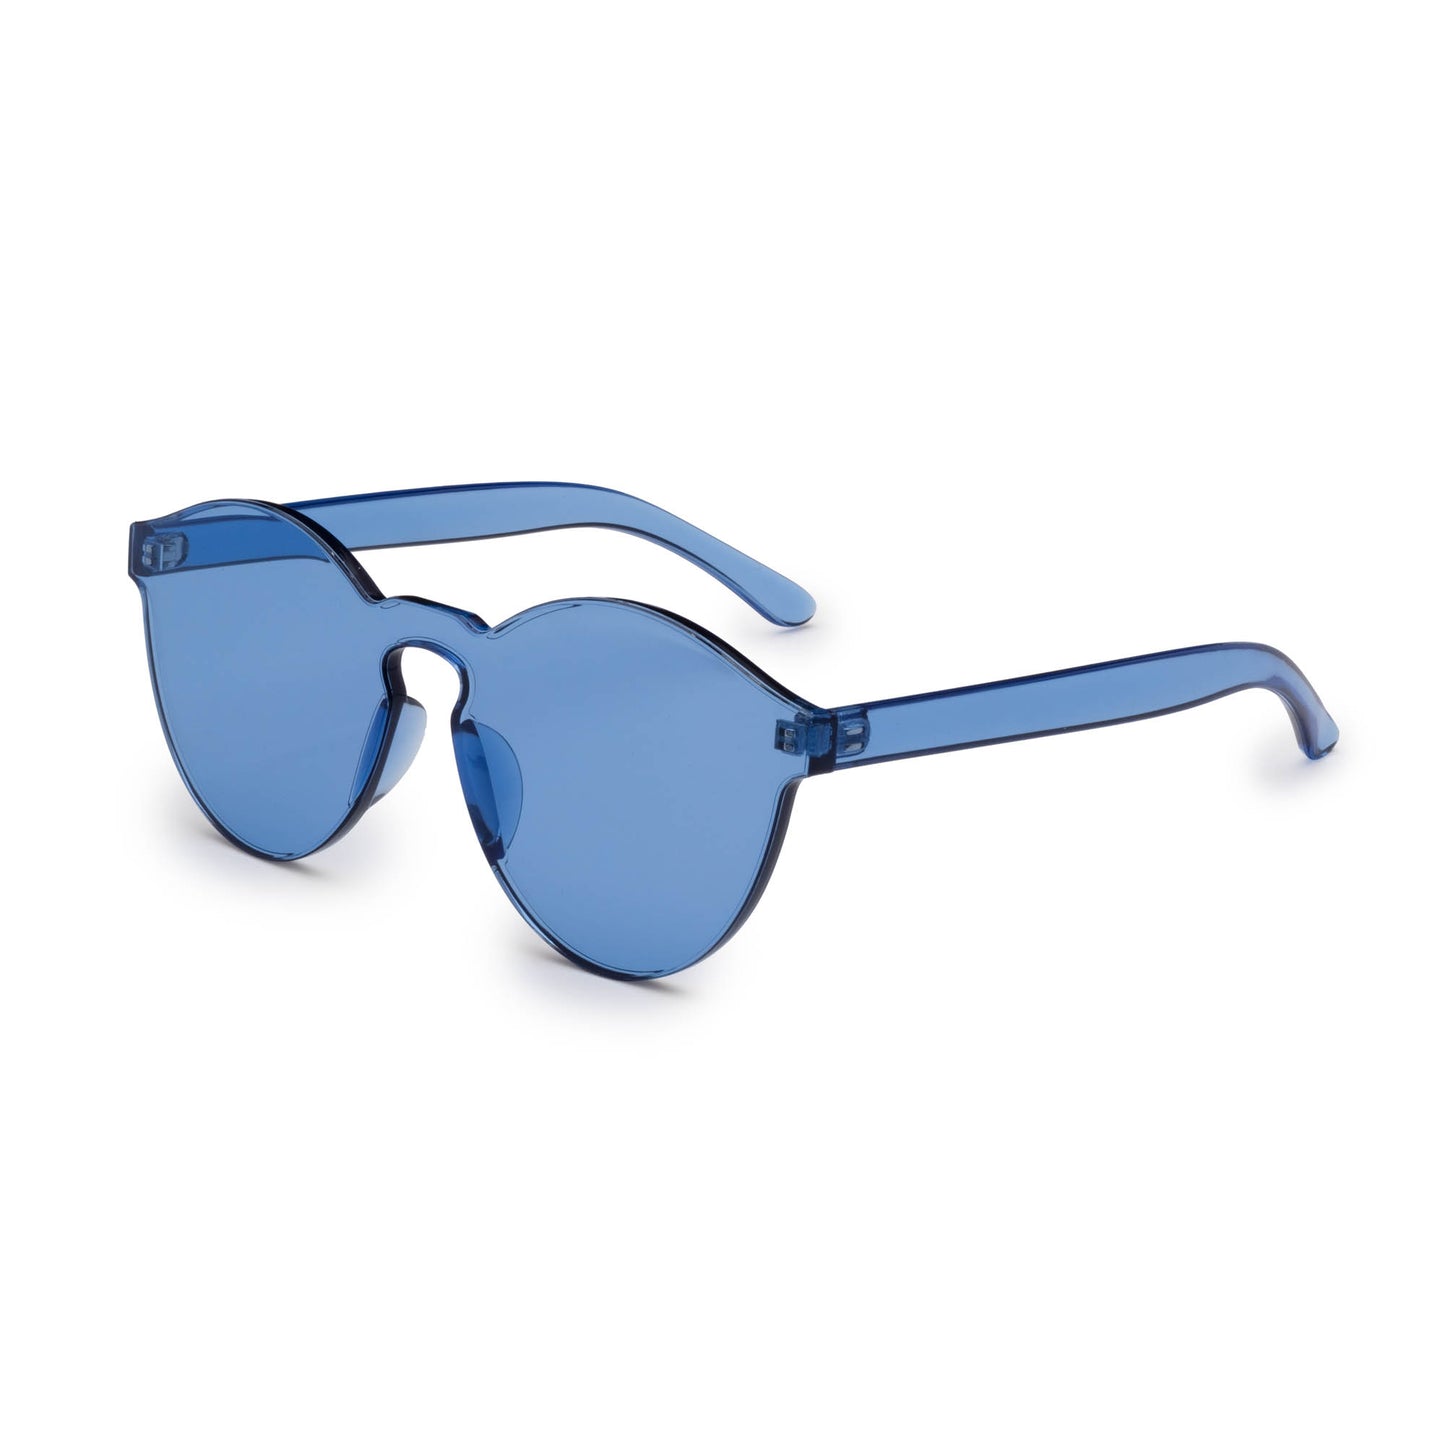 Blue Spectrum Spectacles Sunglasses